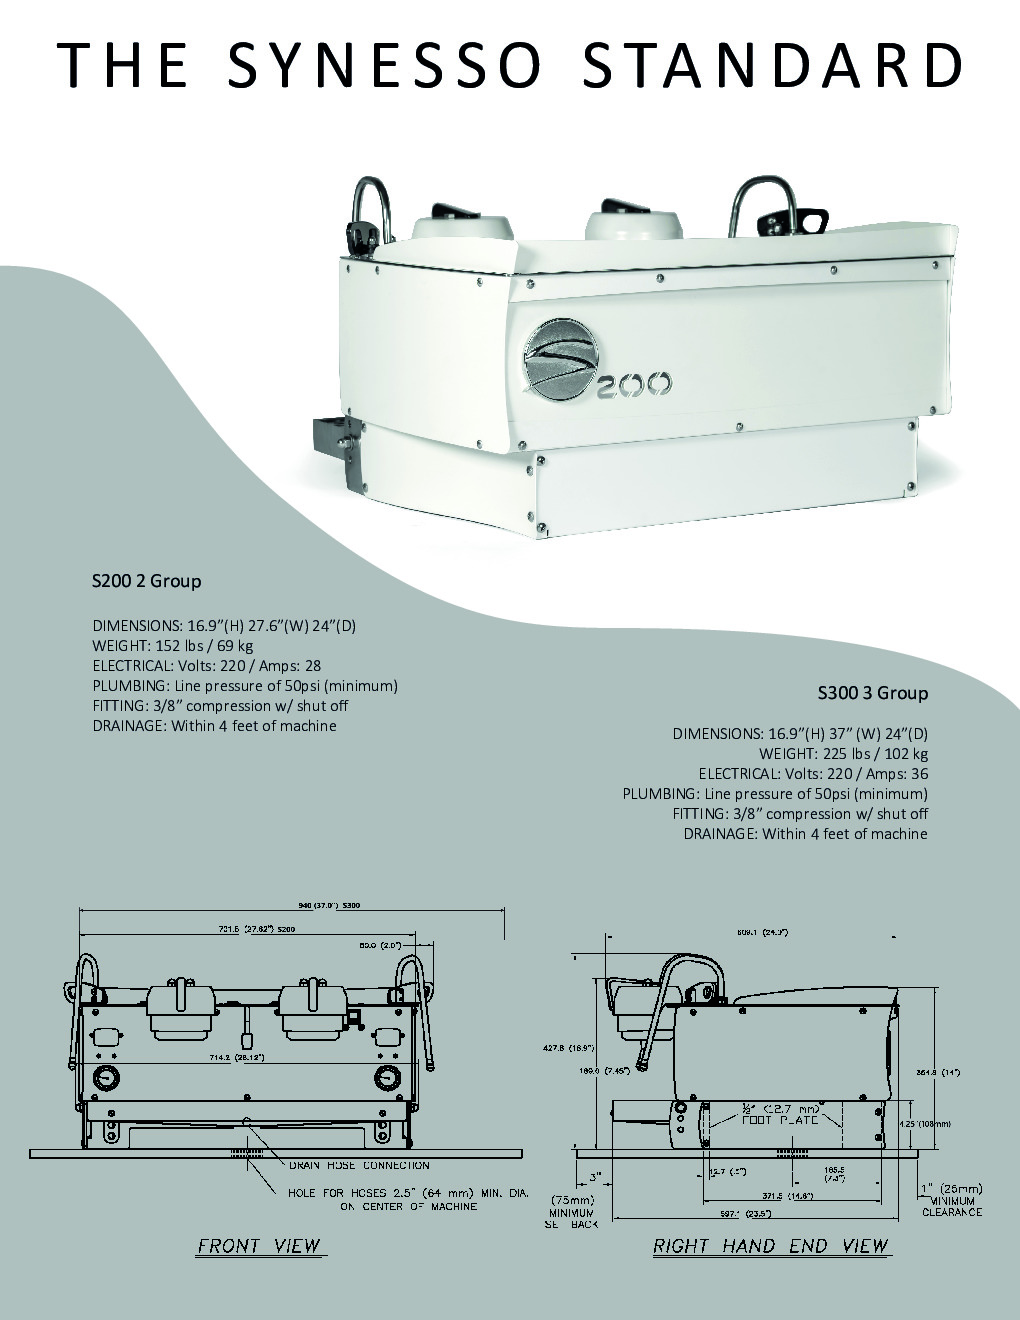 Synesso S-300 Three-Group Espresso Cappuccino Machine w/ 12.3-Lt. Tanks, Semi-Automatic